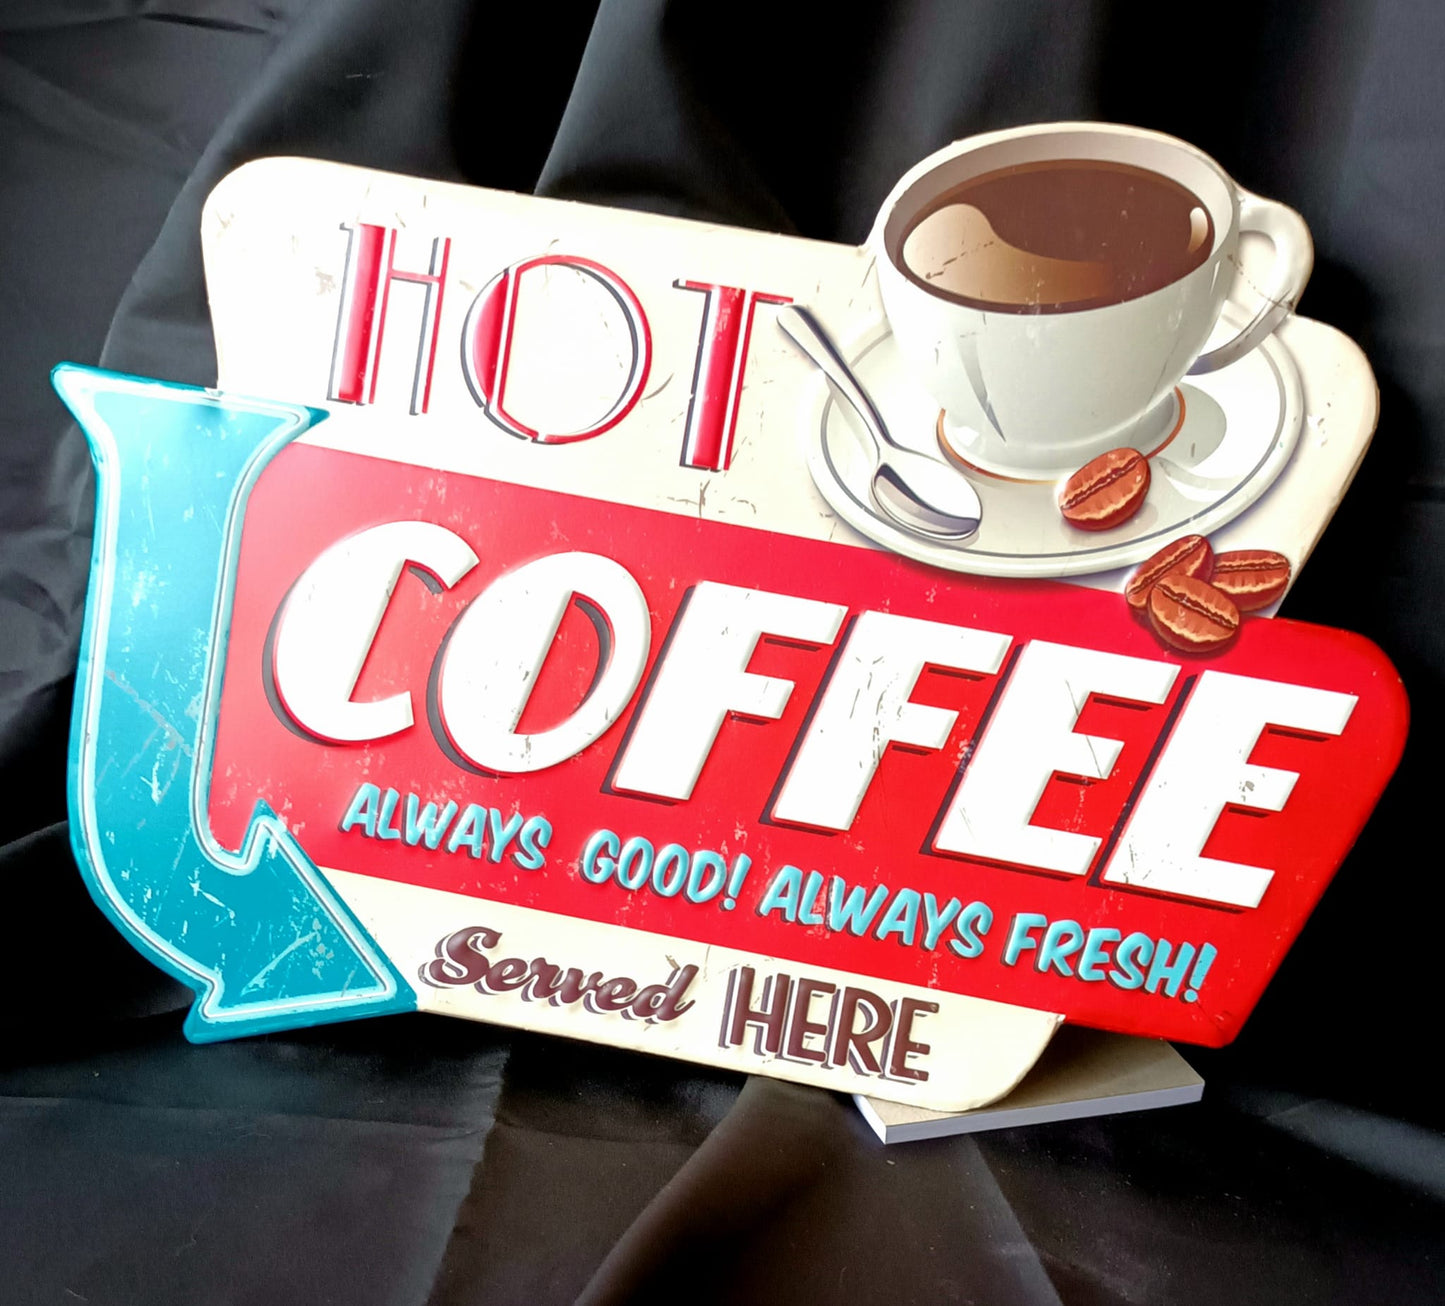 Blechschild "Hot Coffee"